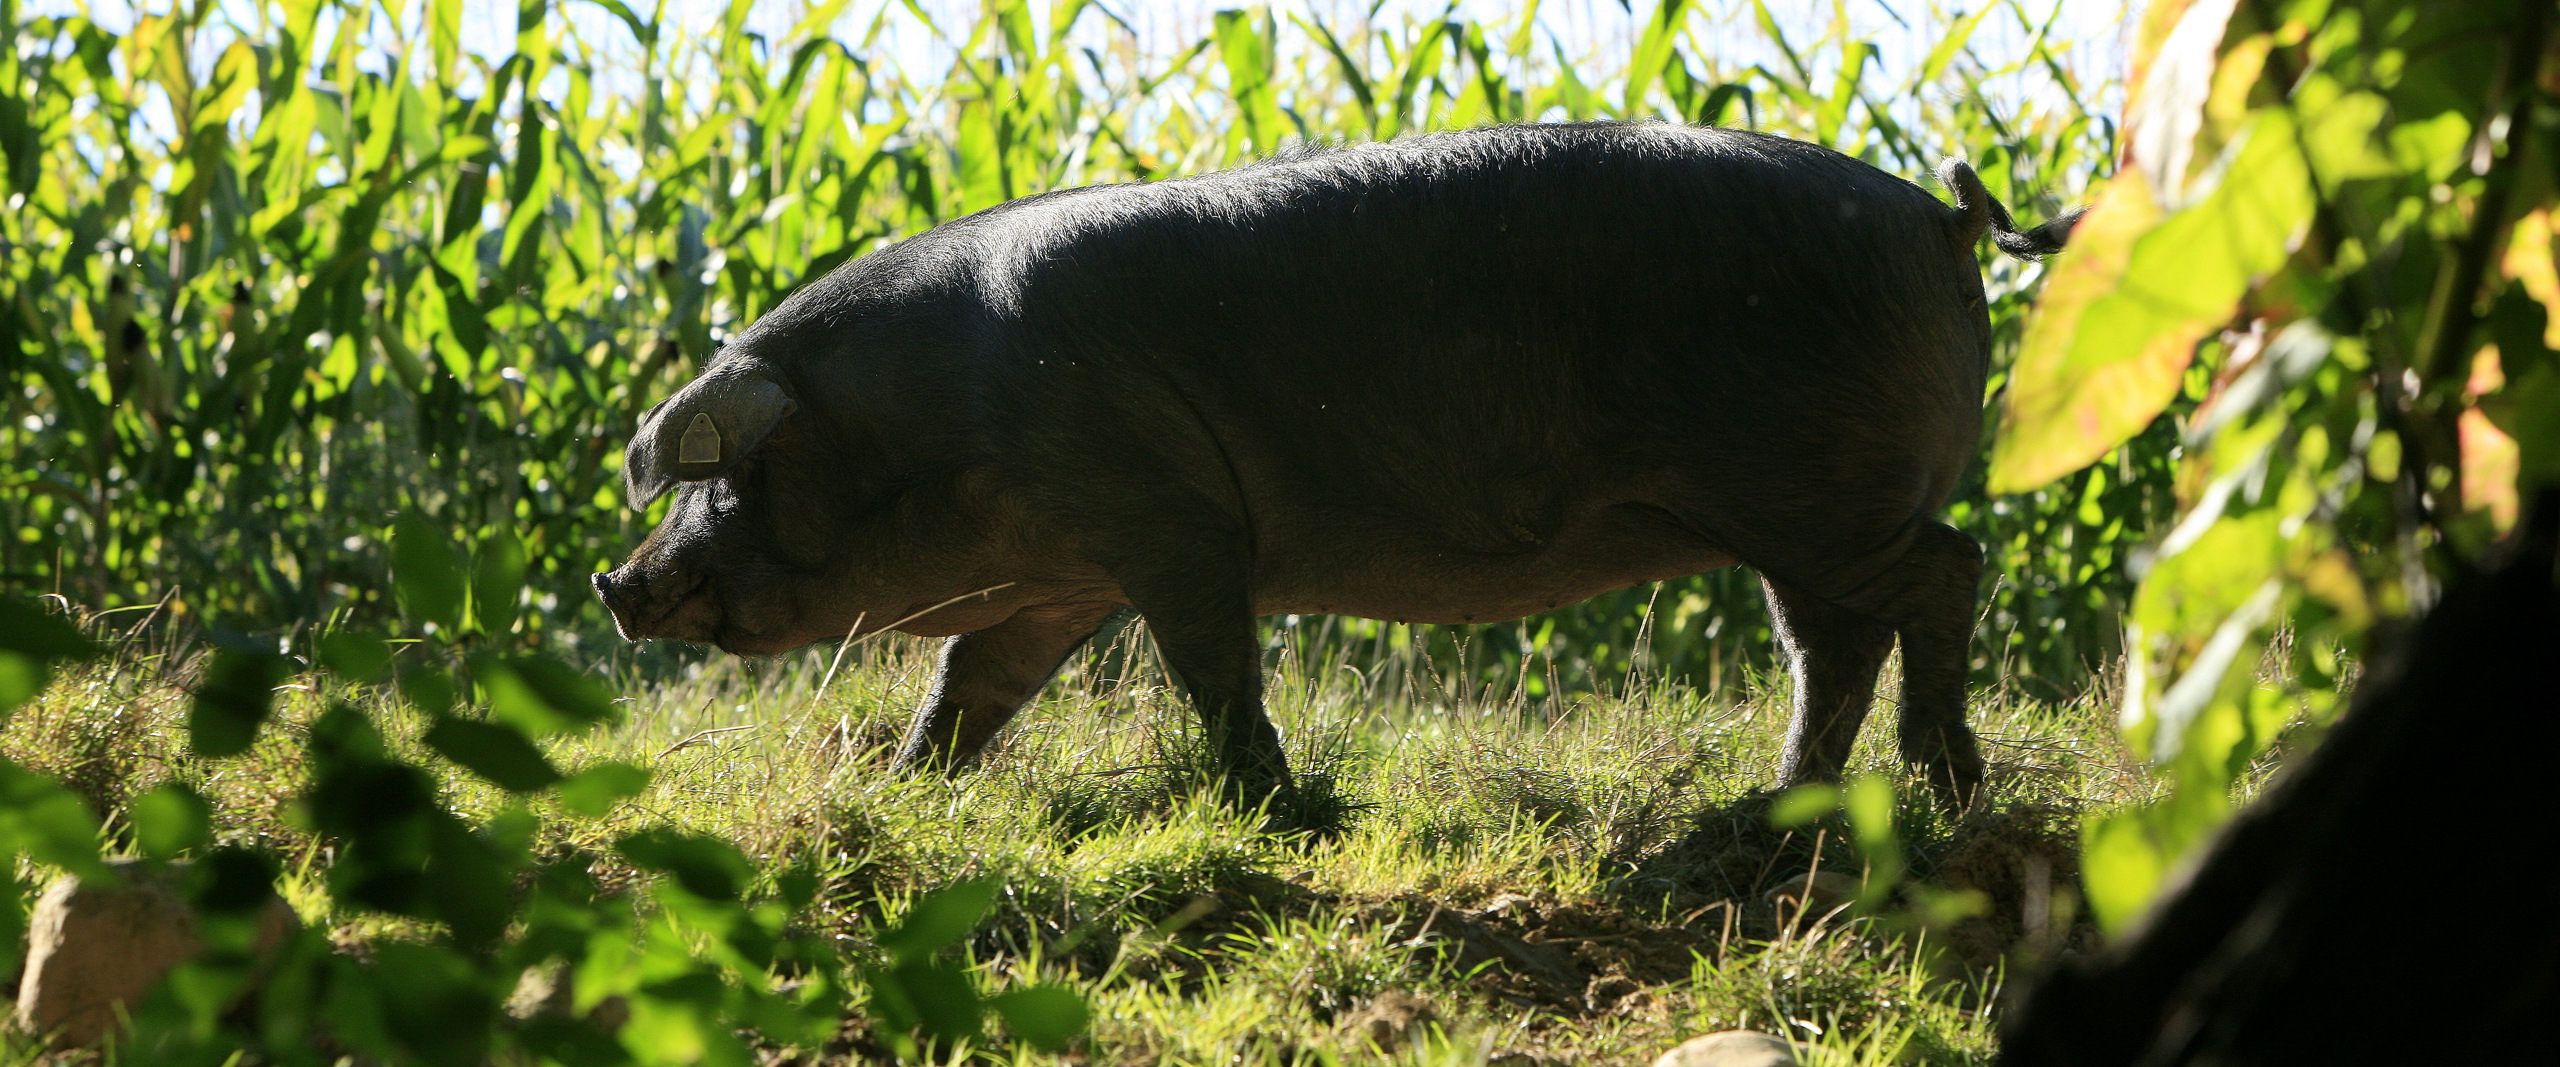 Le porc noir de Bigorre Saveurs des Pyrénées